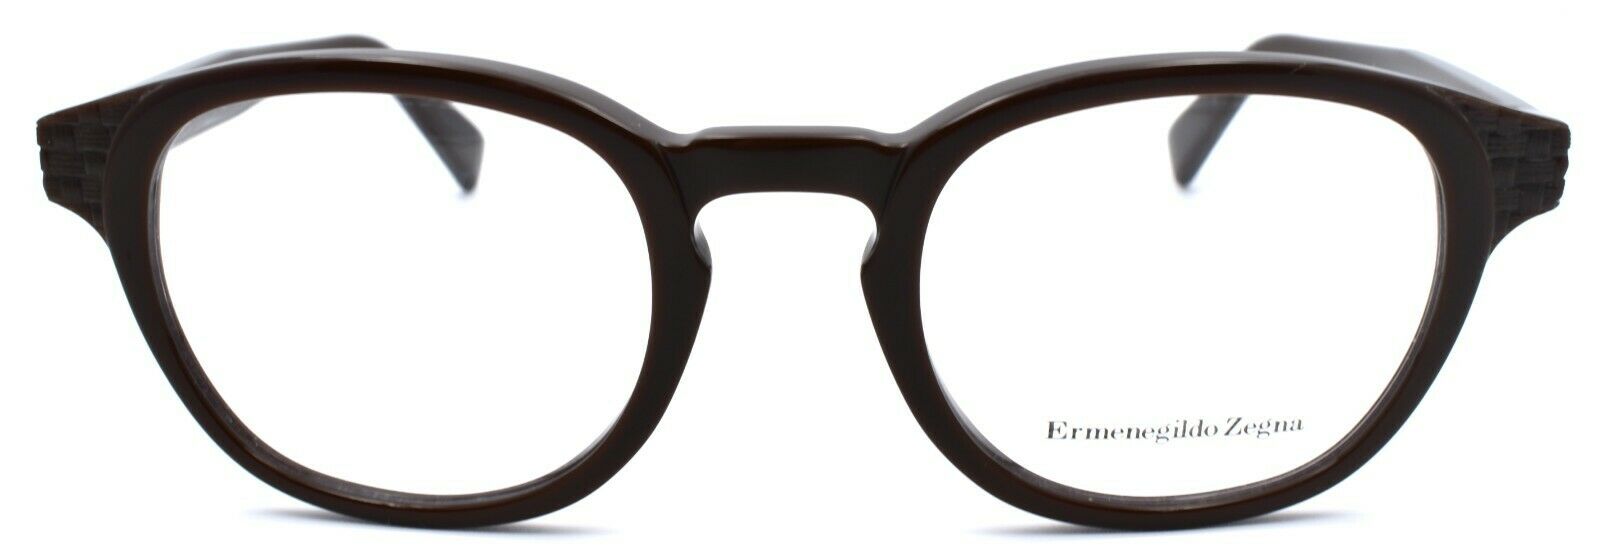 2-Ermenegildo Zegna EZ5108 050 Eyeglasses Frames 48-22-145 Dark Brown Italy-664689860074-IKSpecs